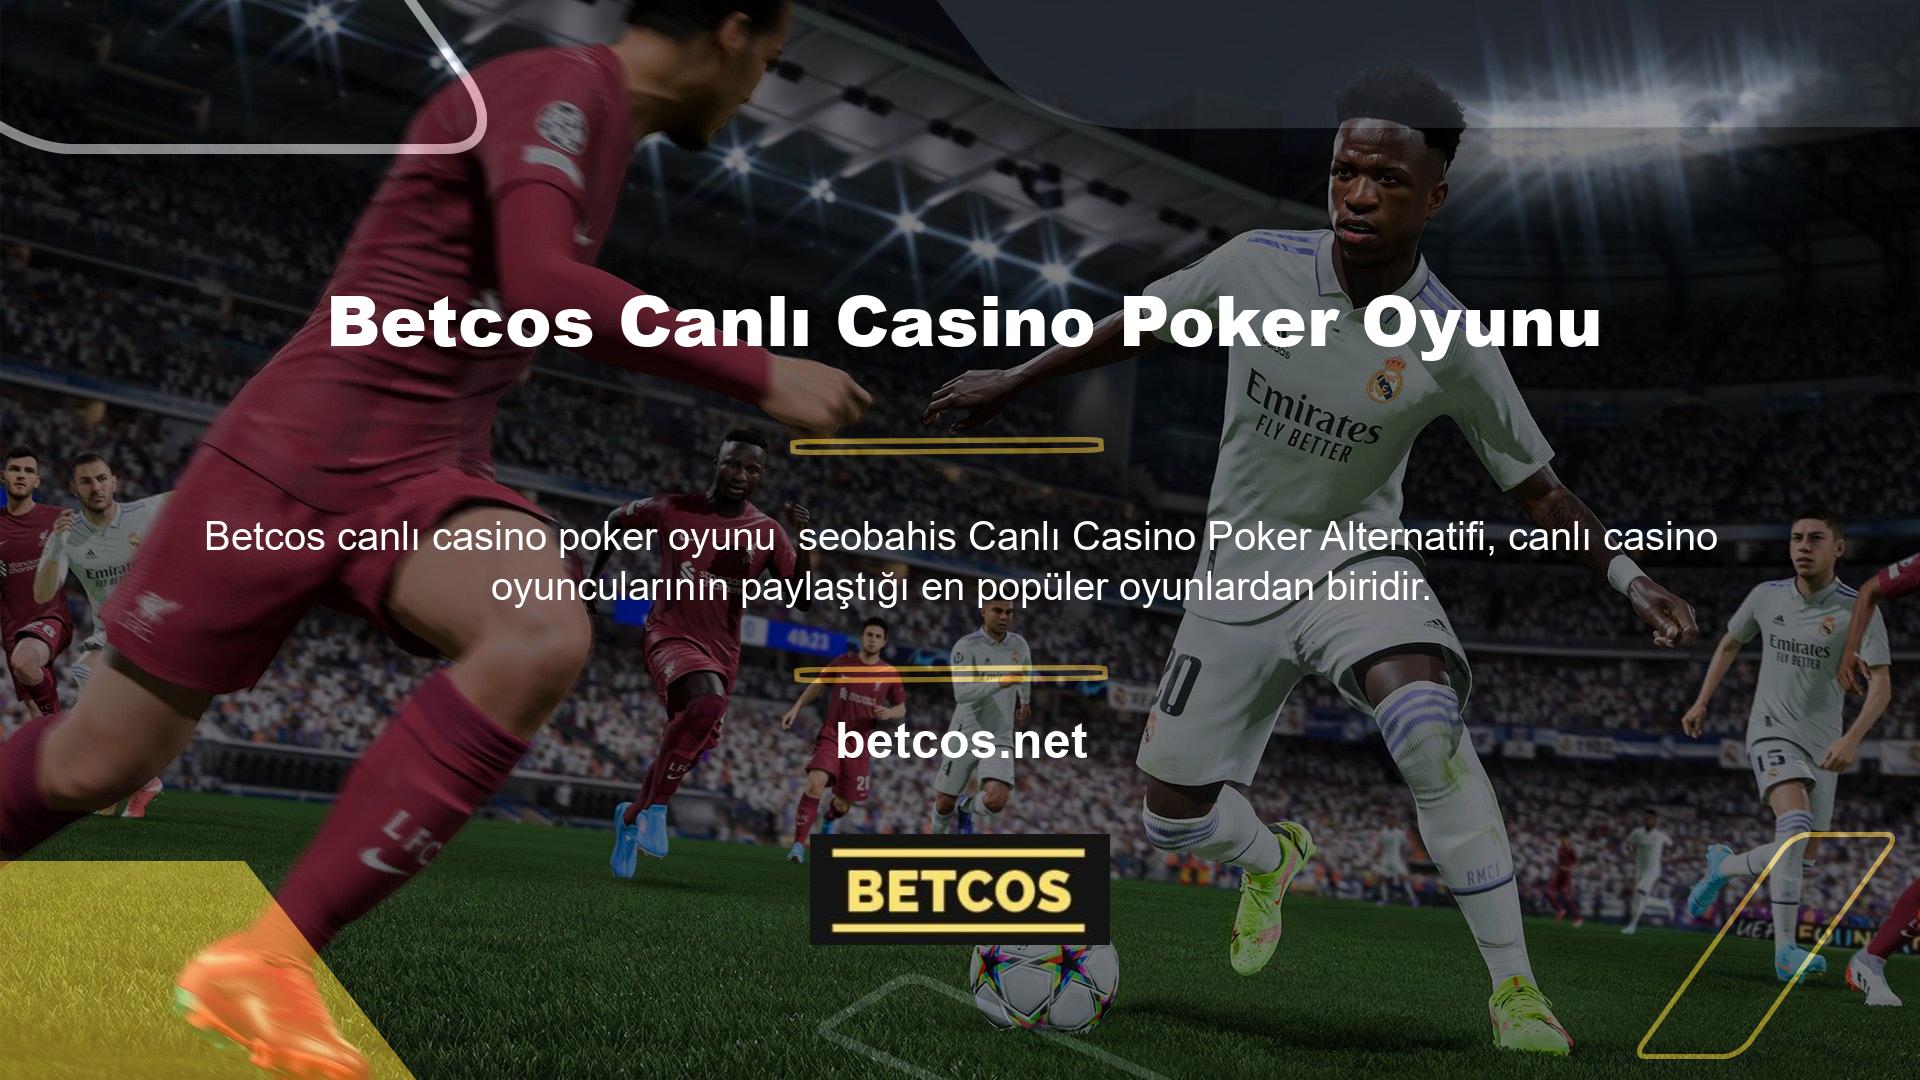 Betcos yurt içi yayıncılık faaliyetlerine devam etmekte ve çeşitli canlı casino oyun seçenekleri üretmektedir